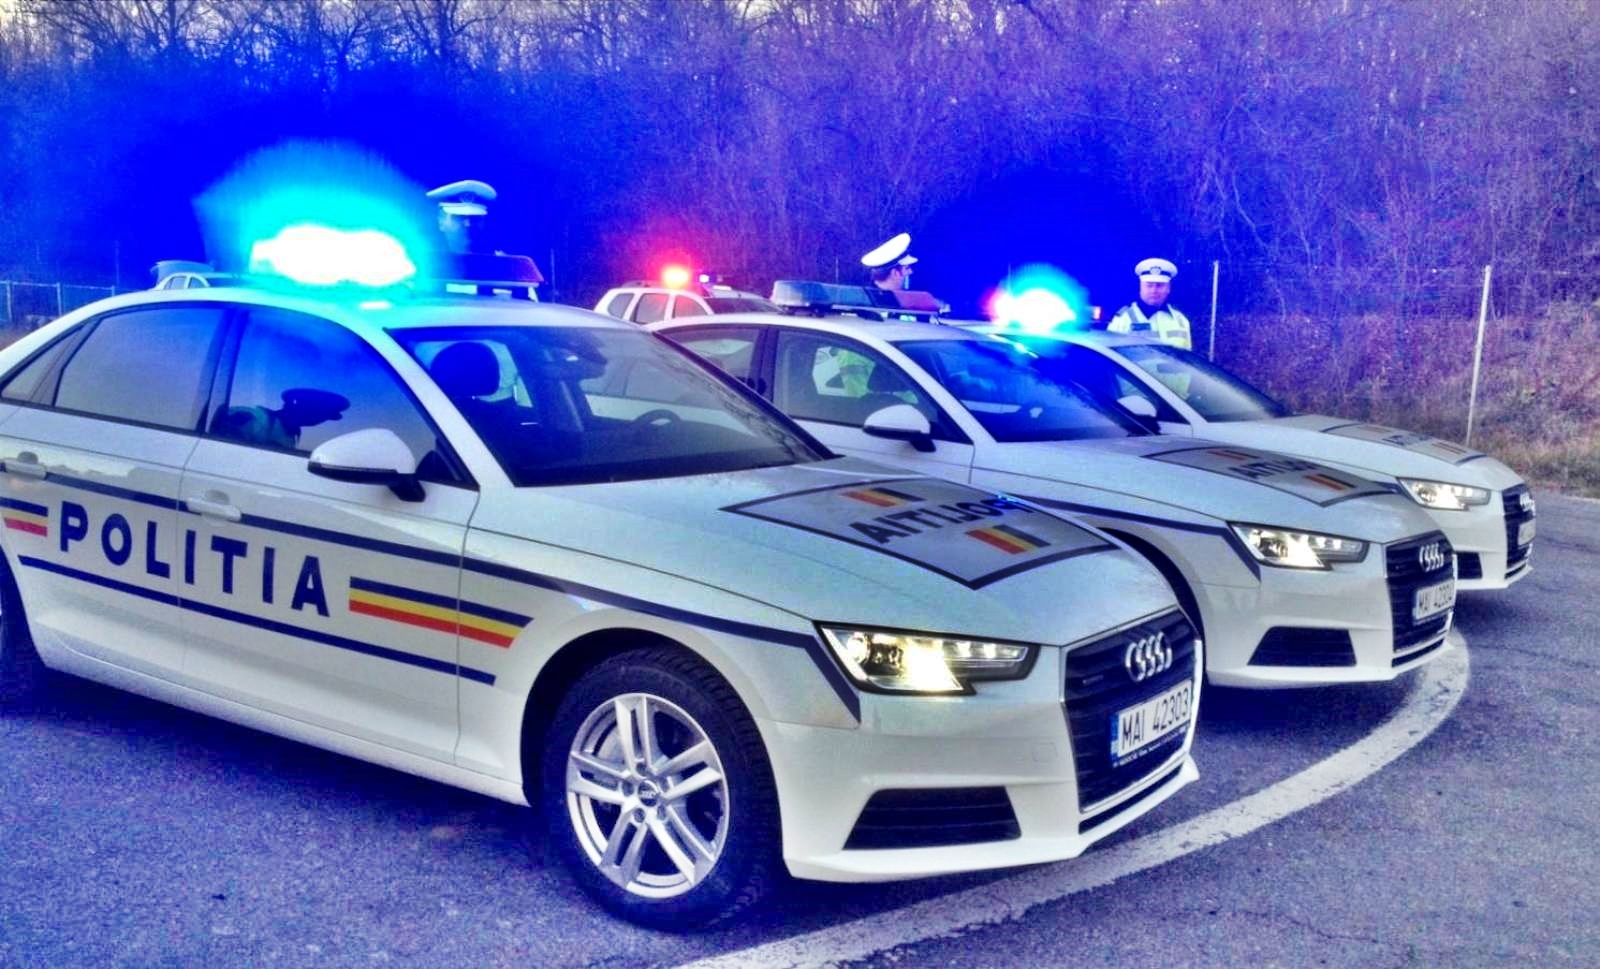 Richiesta seria della polizia rumena per i rumeni in tutto il paese